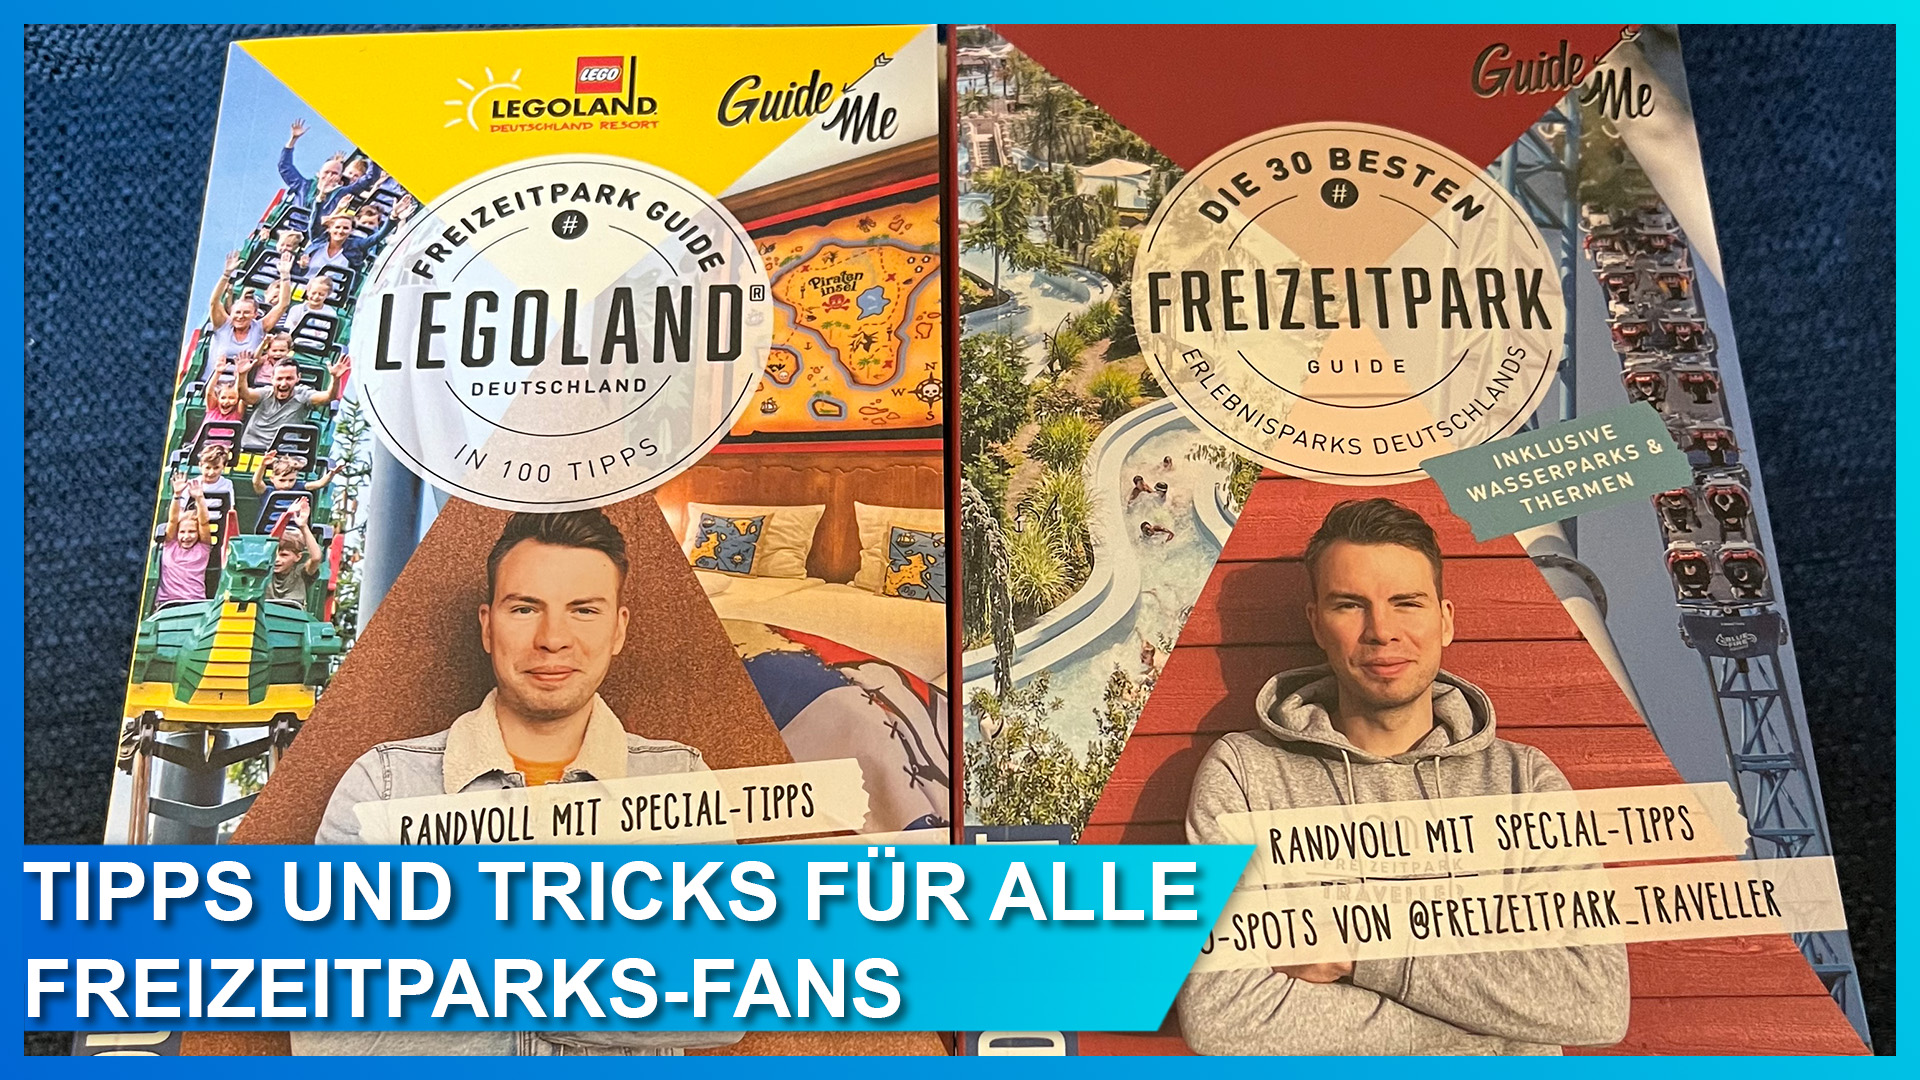 Freizeitpark Traveller Stefan hat Tipps und Tricks für Freizeitparks wie Legoland Deutschland in seinem neuen Guide Buch